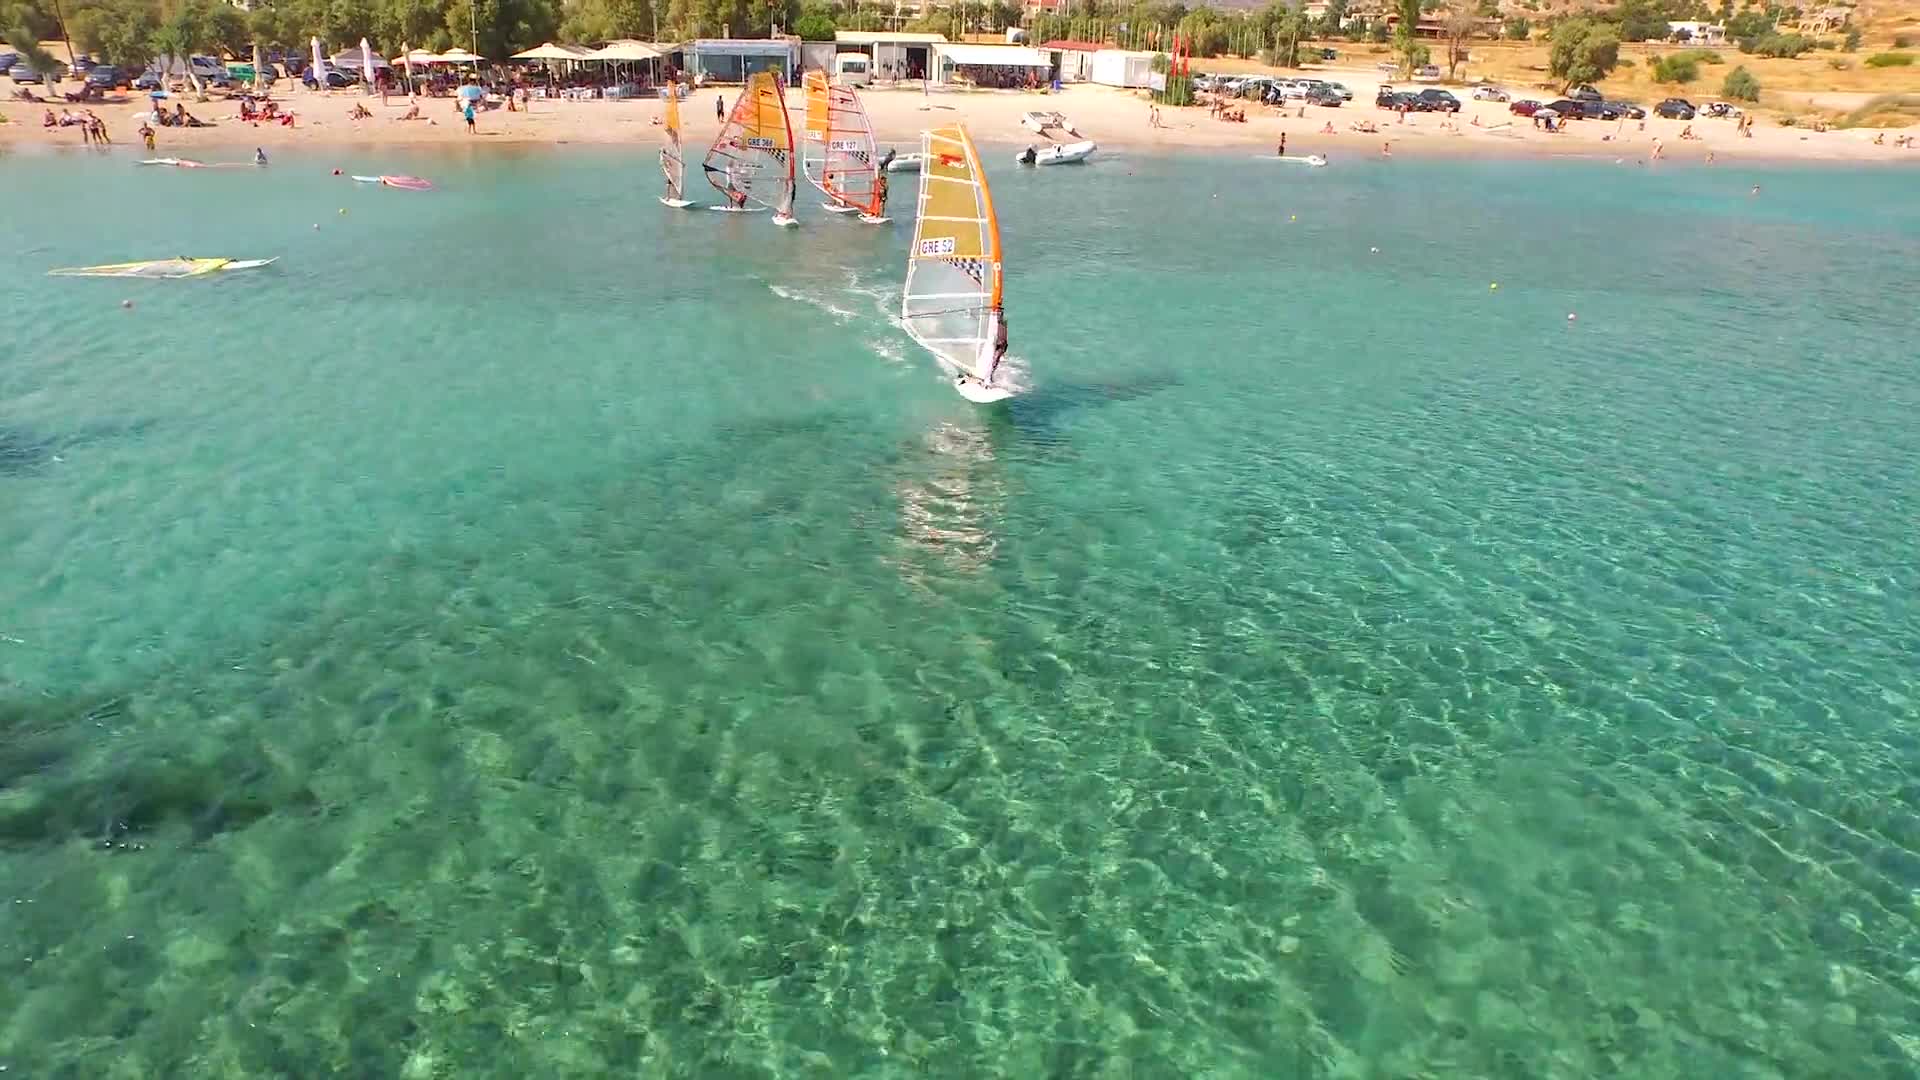 Windsurfing in Greece